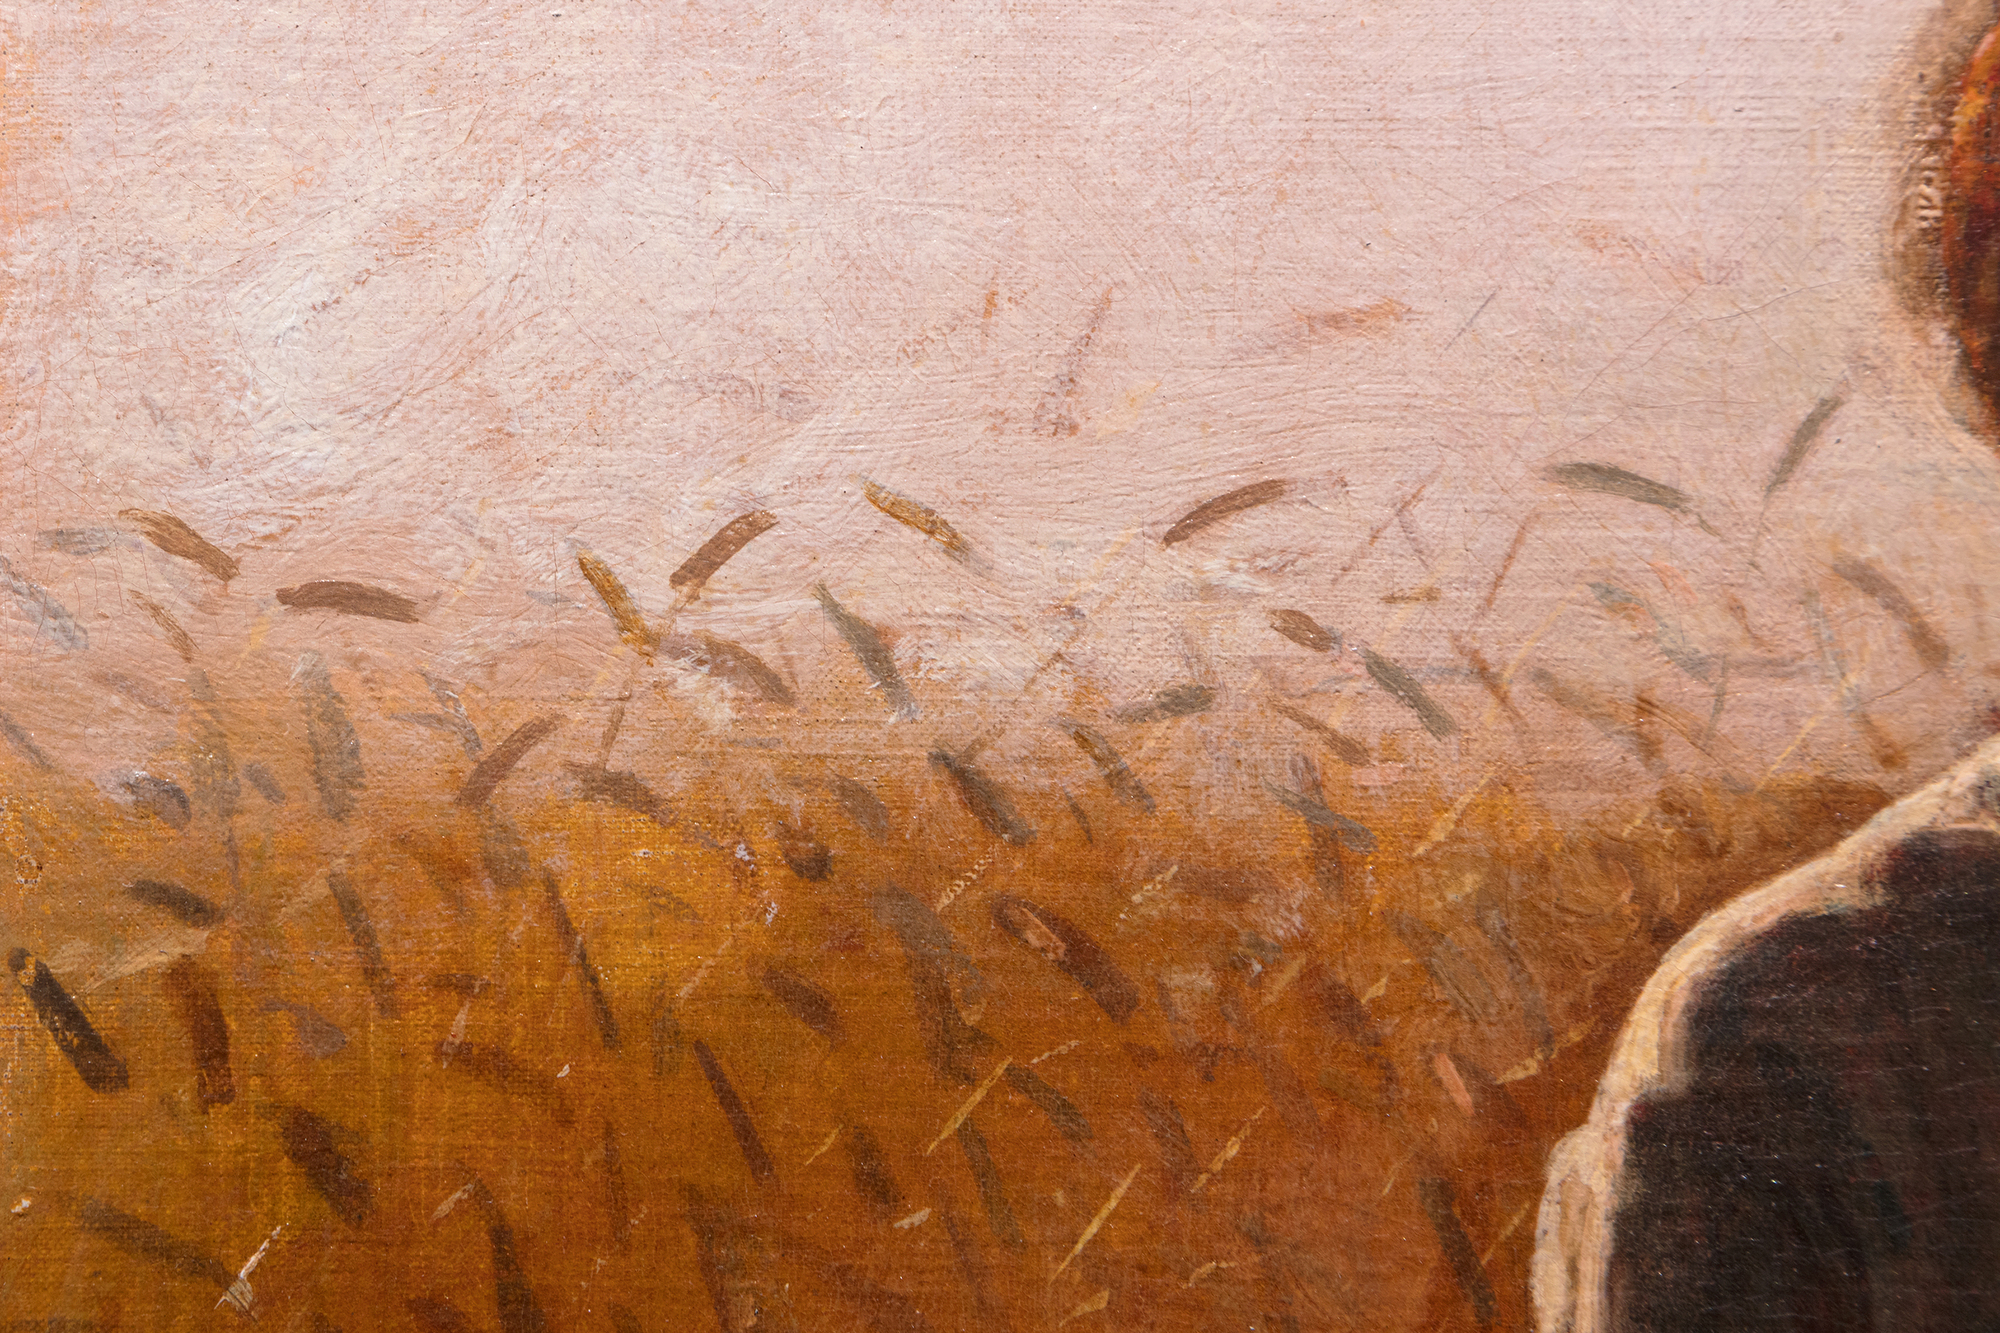 A principios de la década de 1870, Winslow Homer pintaba con frecuencia escenas de la vida en el campo cerca de una pequeña aldea agrícola famosa durante generaciones por sus notables plantaciones de trigo, situada entre el río Hudson y los Catskills, en el estado de Nueva York. Hoy en día Hurley es mucho más famoso por haber inspirado una de las mayores obras de Homer, Snap the Whip (Chasquear el látigo), pintada el verano de 1872. Entre los muchos otros cuadros inspirados en la región, Muchacha de pie en el campo de trigo es rico en sentimientos, pero no demasiado sentimentalista. Está directamente relacionado con un estudio de 1866 pintado en Francia y titulado In the Wheatfields (En los campos de trigo), y con otro pintado al año siguiente de su regreso a América. Pero, sin duda, Homero se habría sentido más orgulloso de éste. Se trata de un retrato, un estudio de vestuario, un cuadro de género en la gran tradición de la pintura pastoril europea, y un espectacular tour de force atmosférico a contraluz, impregnado de la luz de las horas crepusculares que se desvanece rápidamente, animado con notas lambiscentes y floridas y toques de espigas de trigo. En 1874, Homer envió cuatro cuadros a la exposición de la Academia Nacional de Diseño. Uno se titulaba "Muchacha". ¿No podría ser éste?